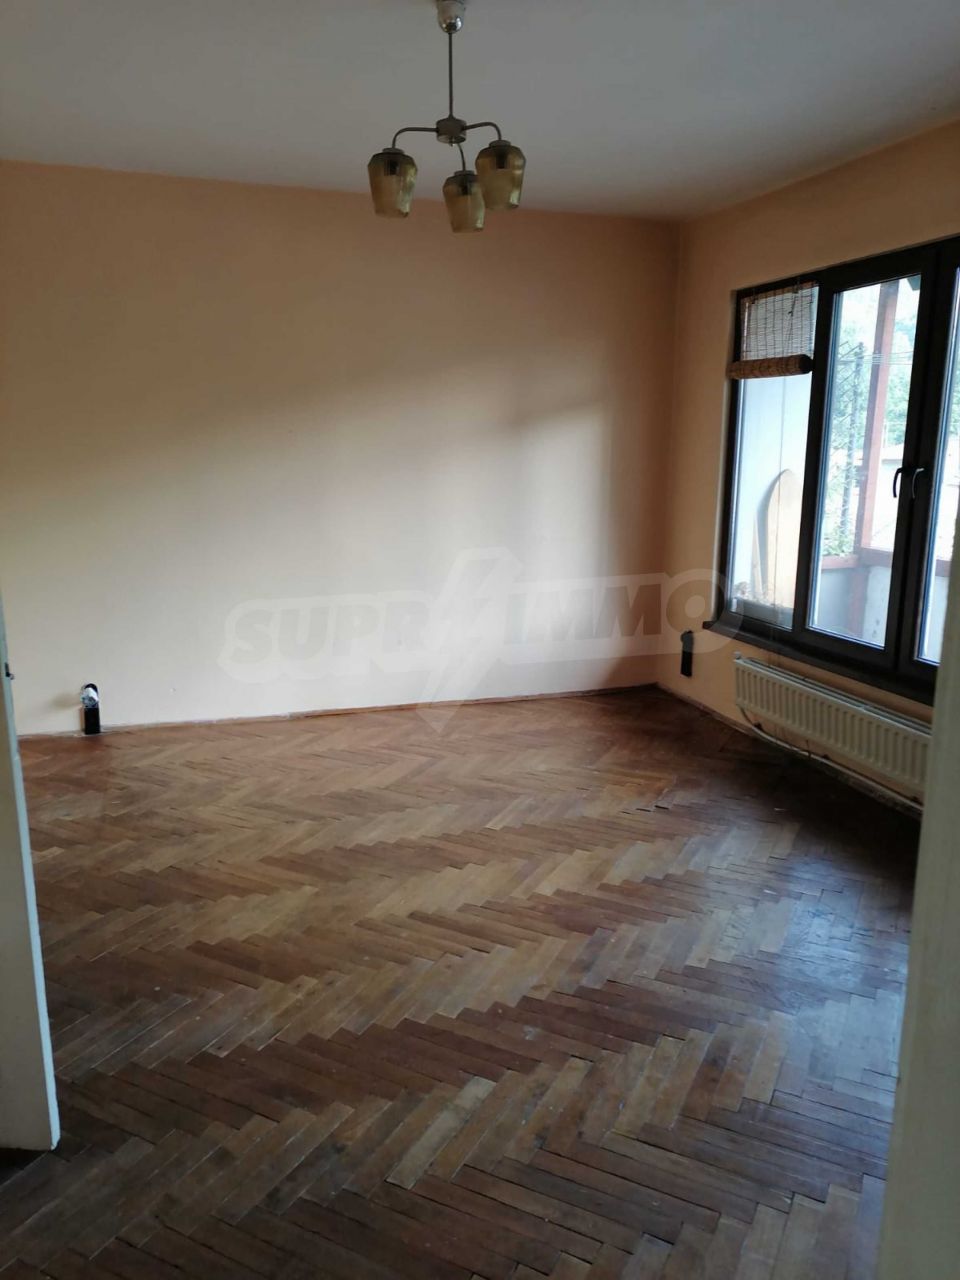 Apartment in Smolyan, Bulgaria, 86 sq.m - picture 1